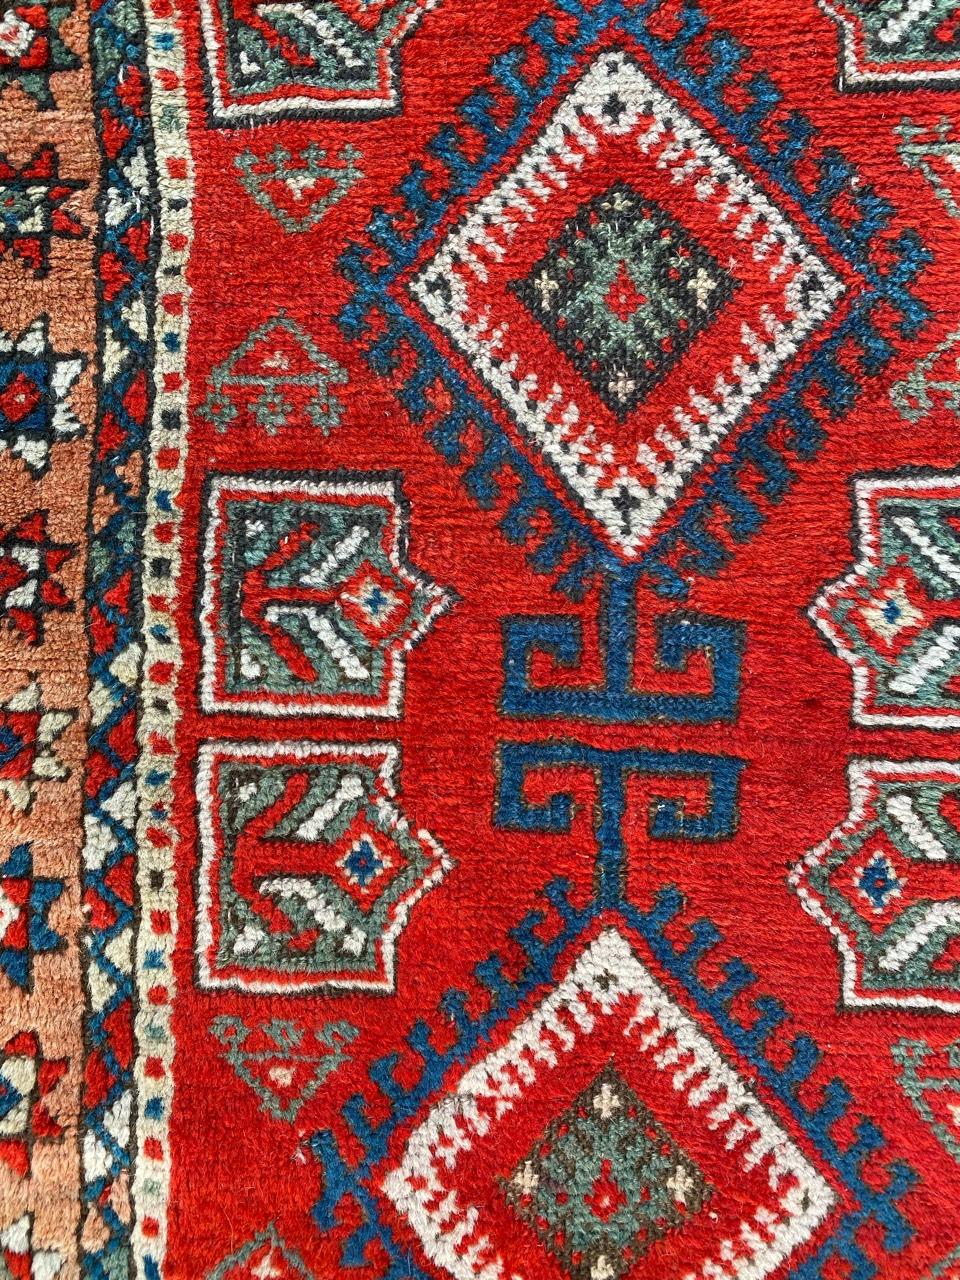 Joli tapis turc du début du 20ème siècle avec un design géométrique tribal et de belles couleurs avec du rouge, du bleu, de l'orange et du vert, entièrement noué à la main avec du velours de laine sur une base de laine.